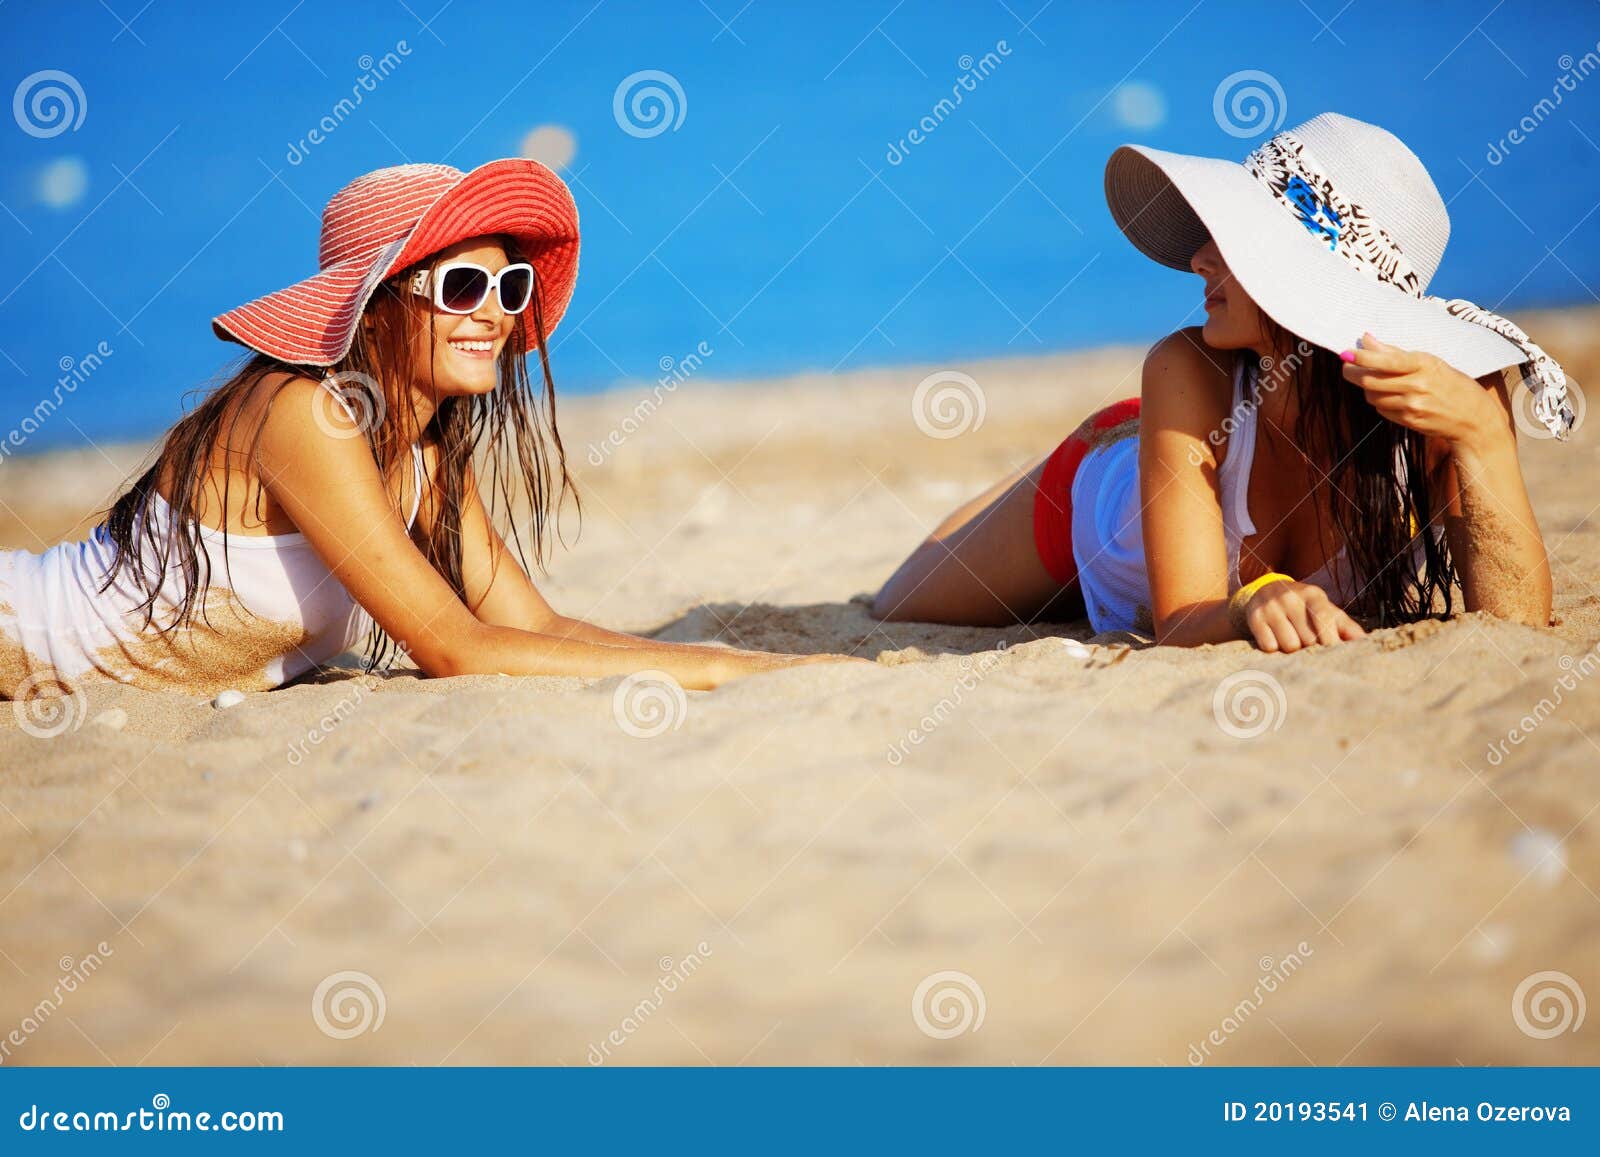 Bottomless girl beach